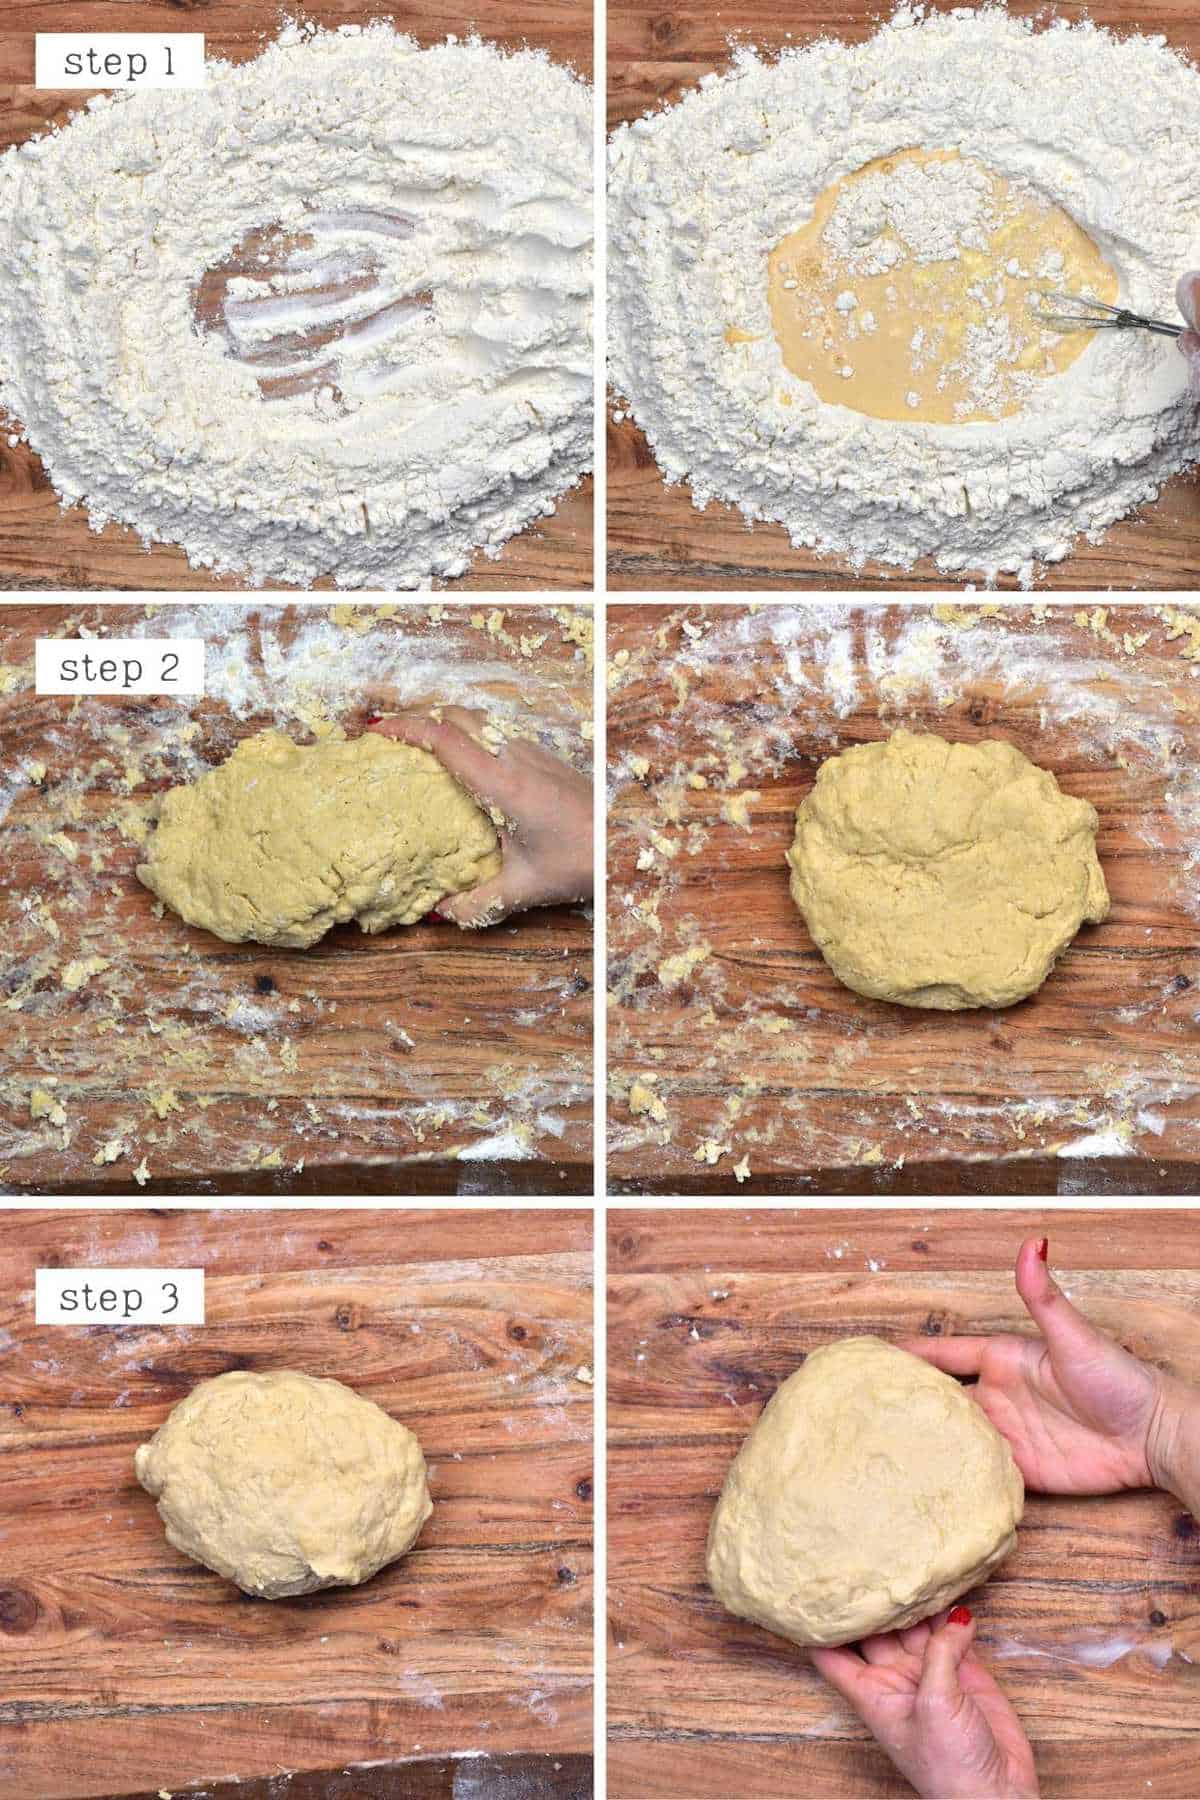 Steps for making dinner roll dough